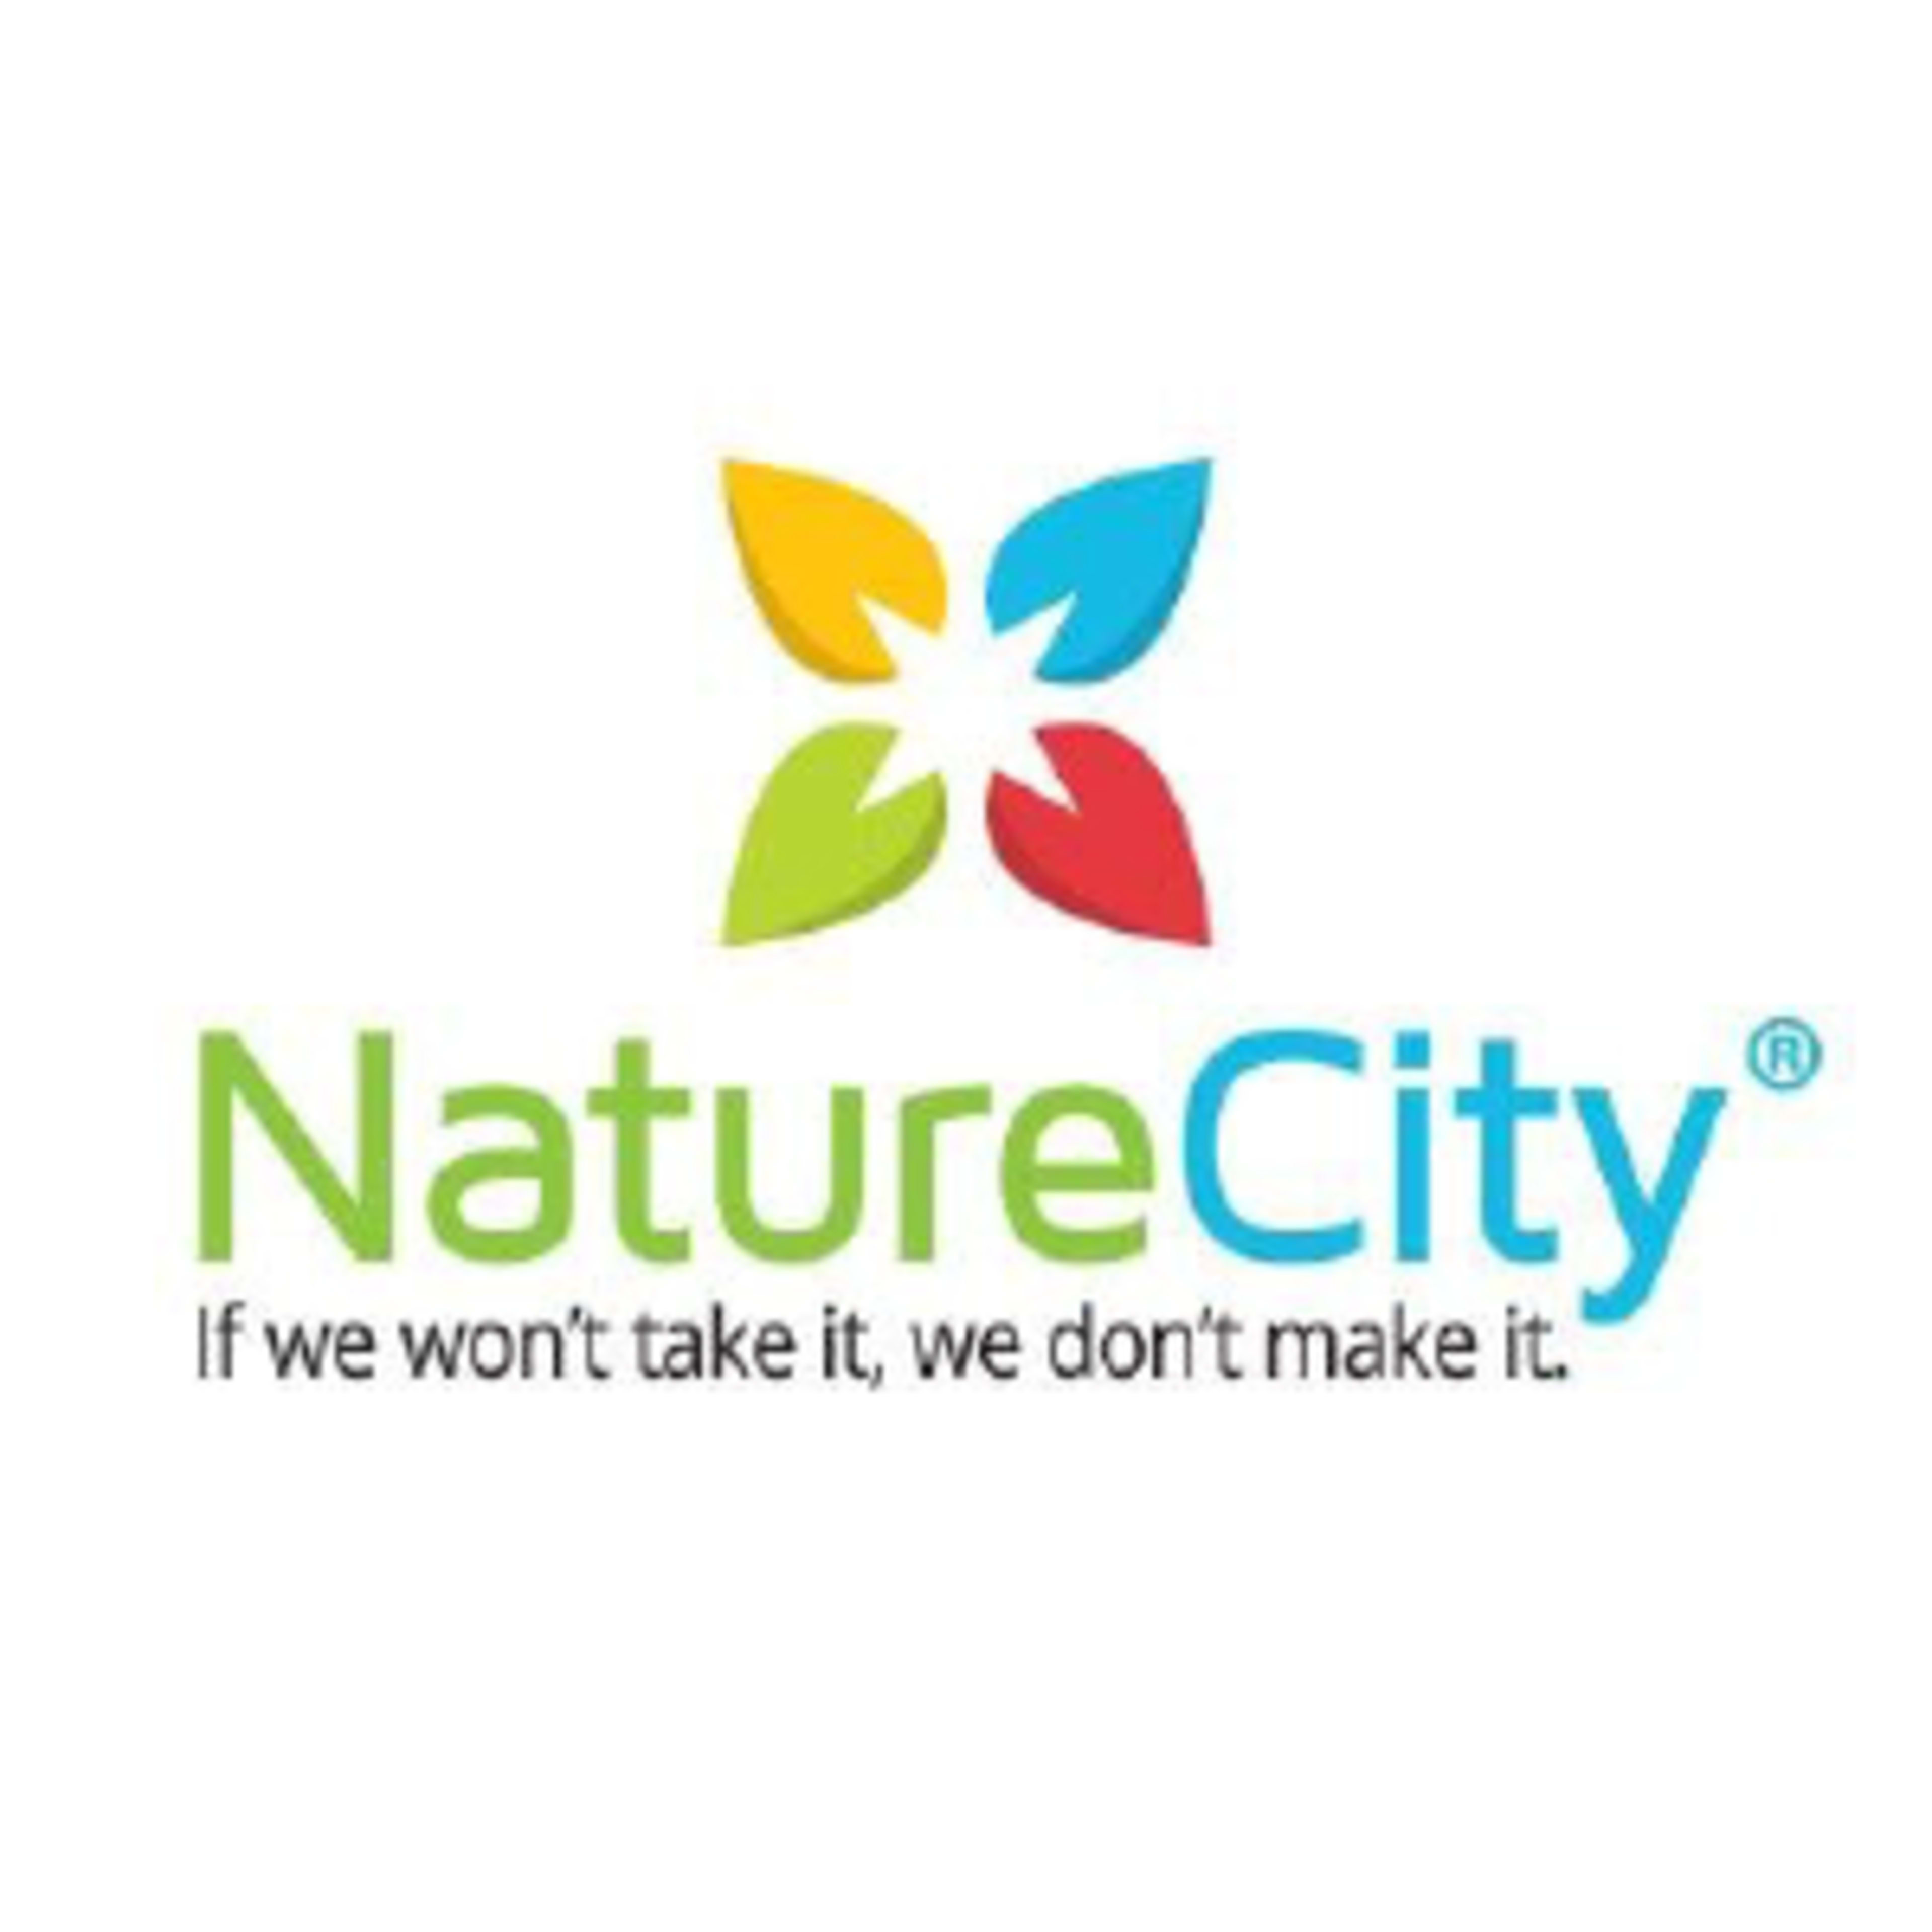 NatureCity Code